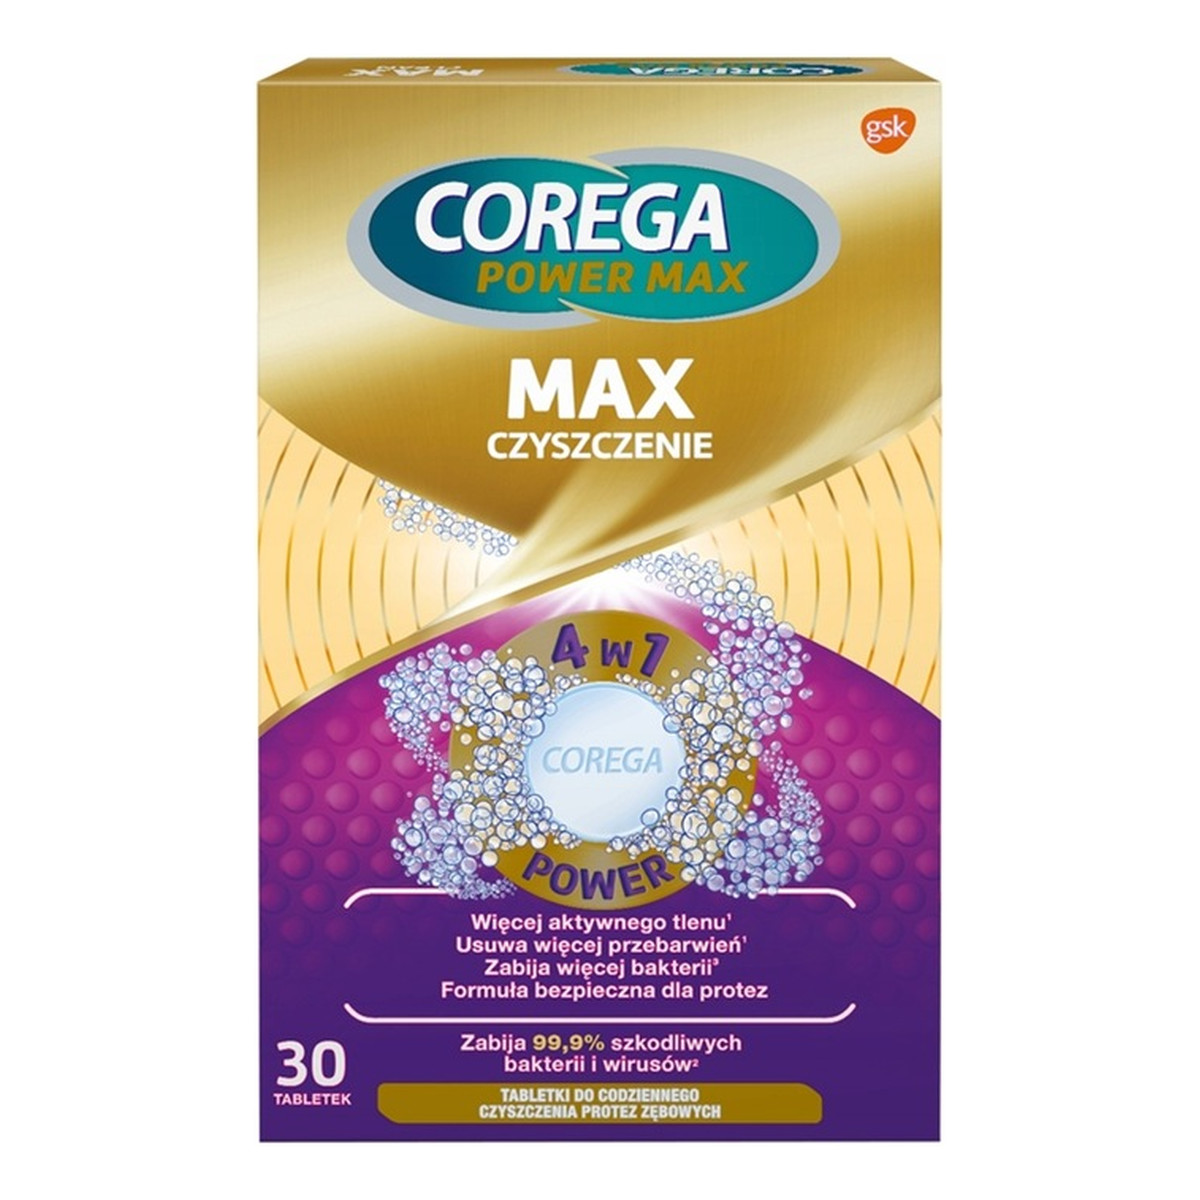 Corega Max czyszczenie tabletki do czyszczenia protez zębowych 30szt